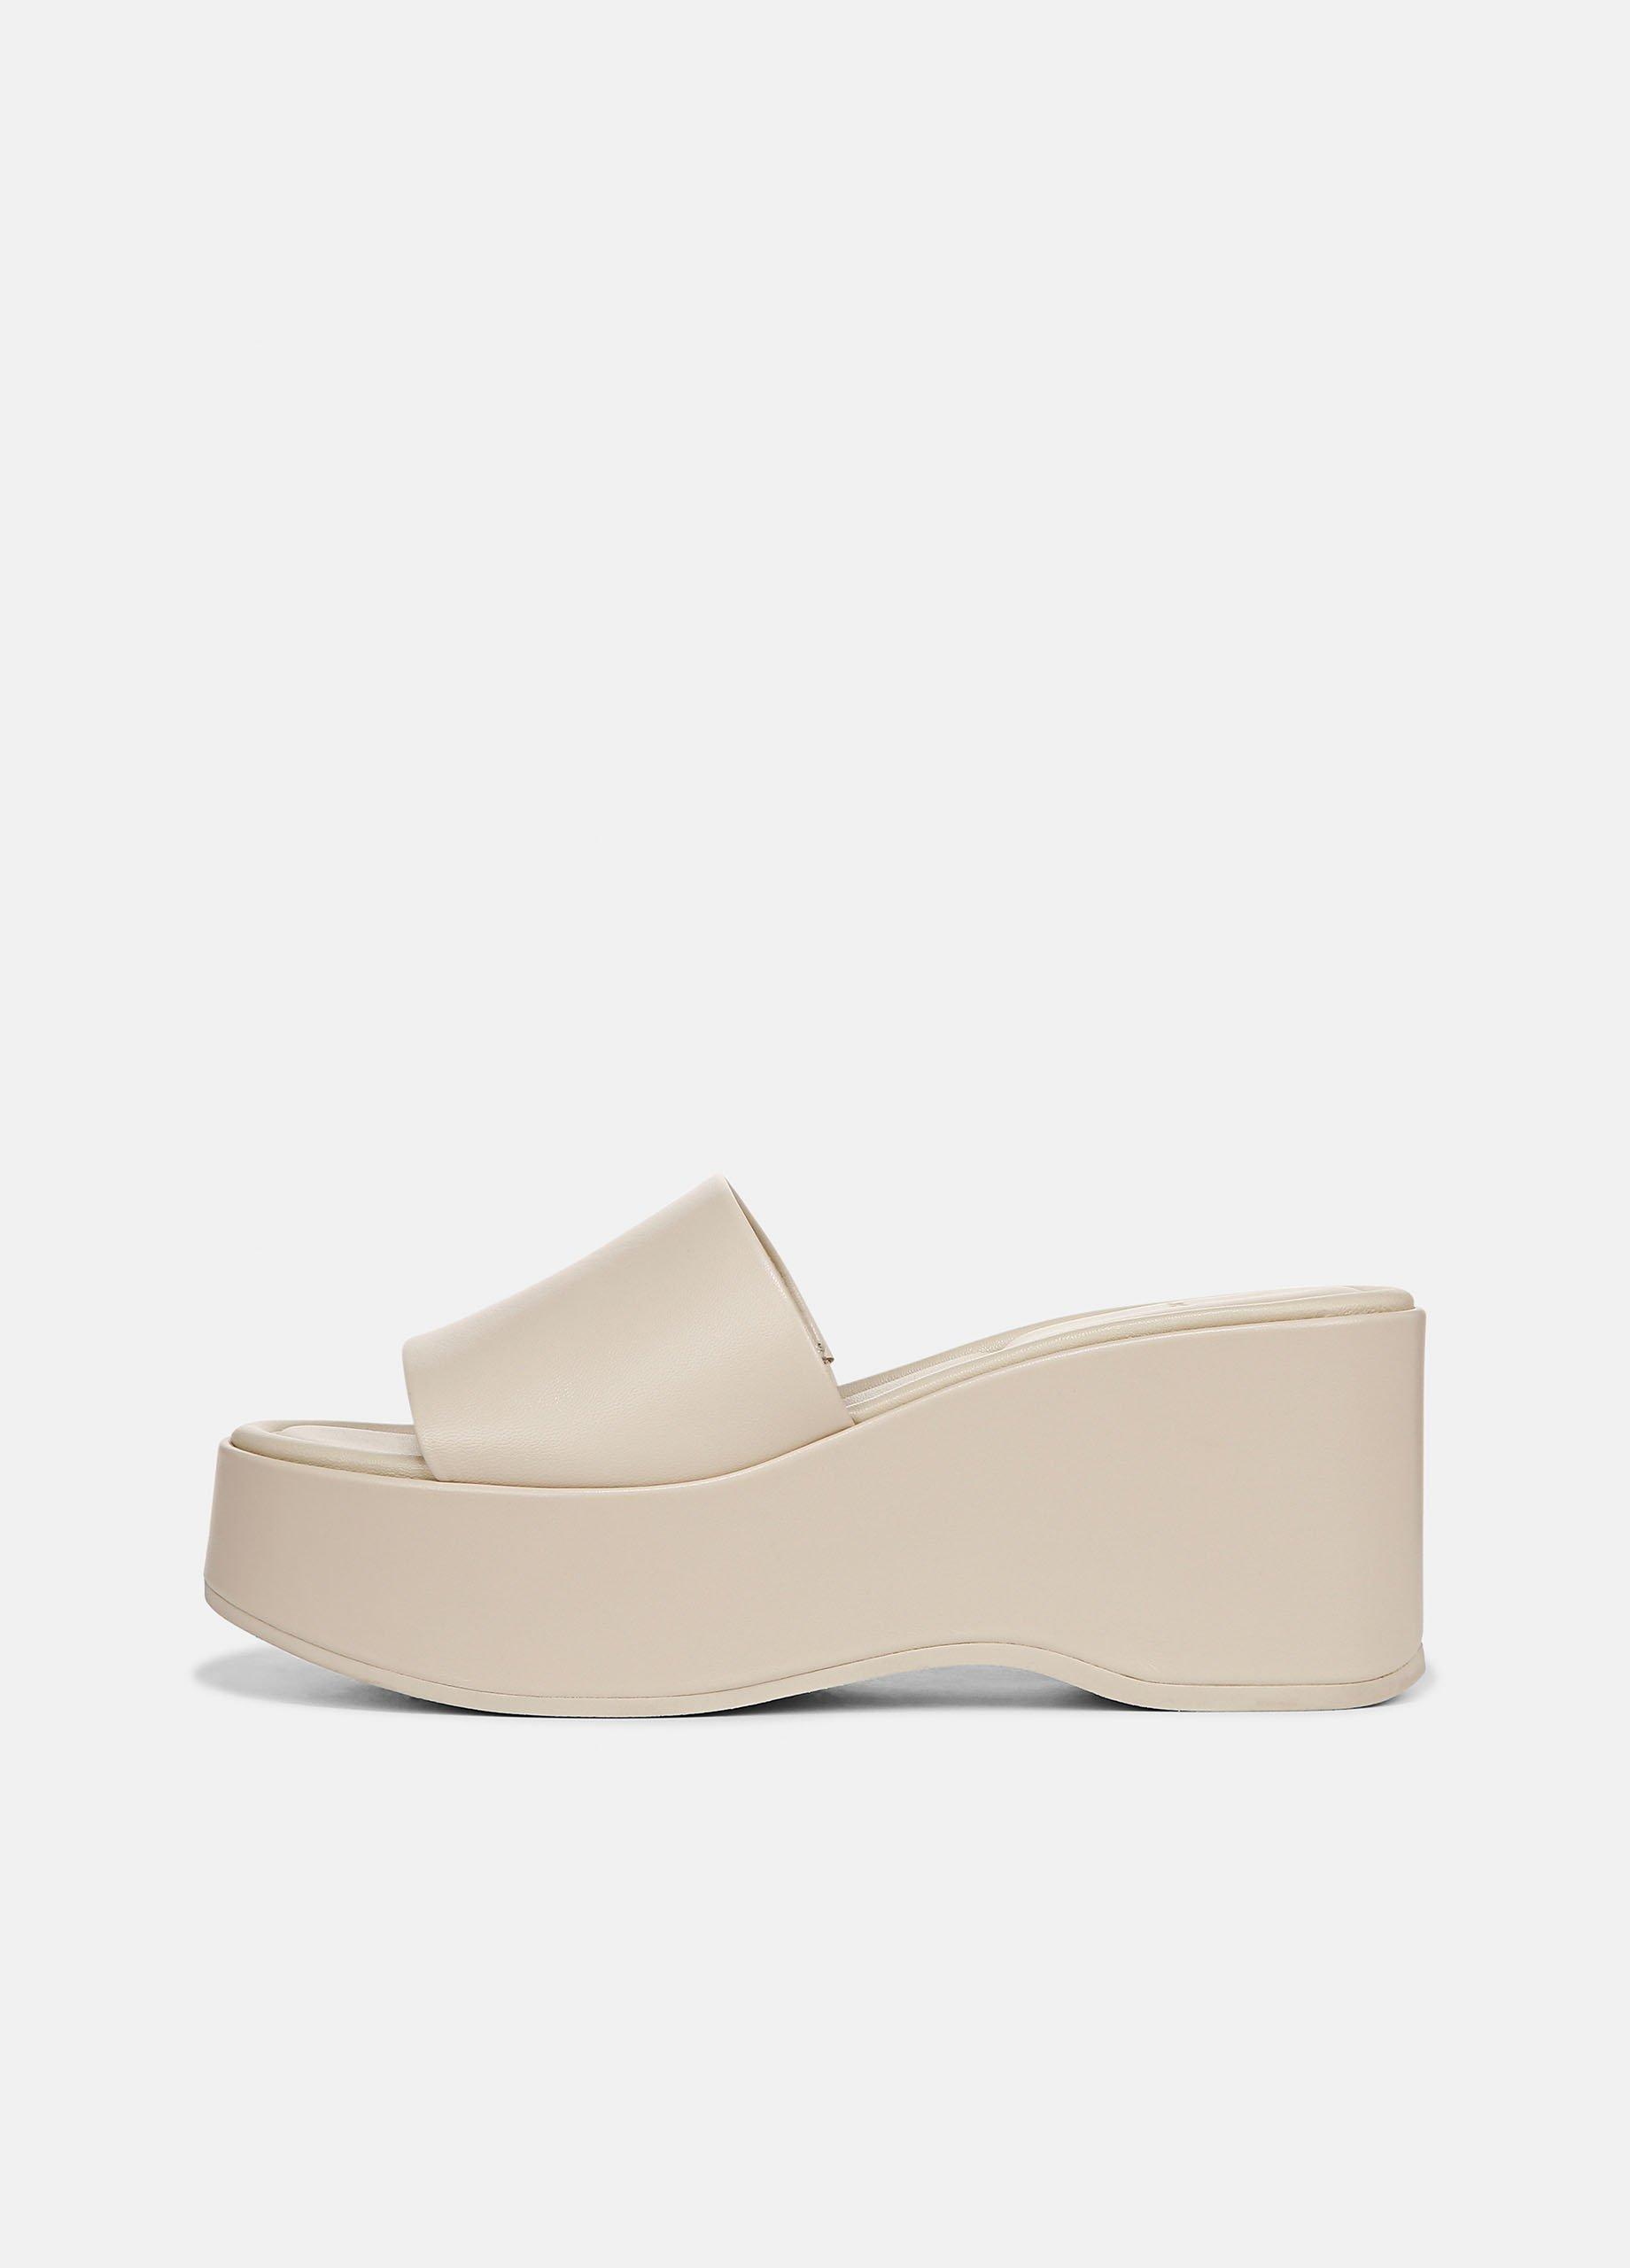 Polina Leather Platform Sandal, Moonlight, Size 8.5 Vince